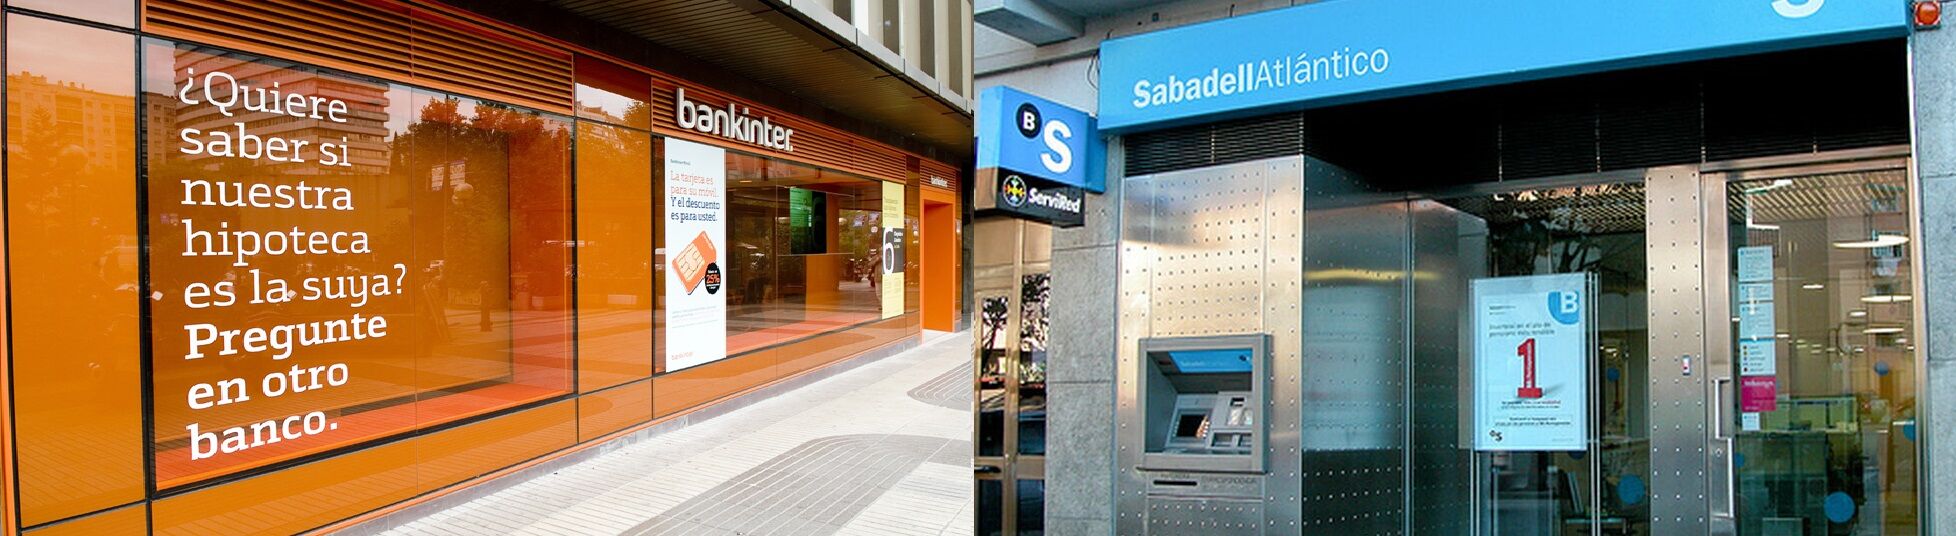 Citi recorta el potencial en Bolsa de Banco Sabadell y Bankinter